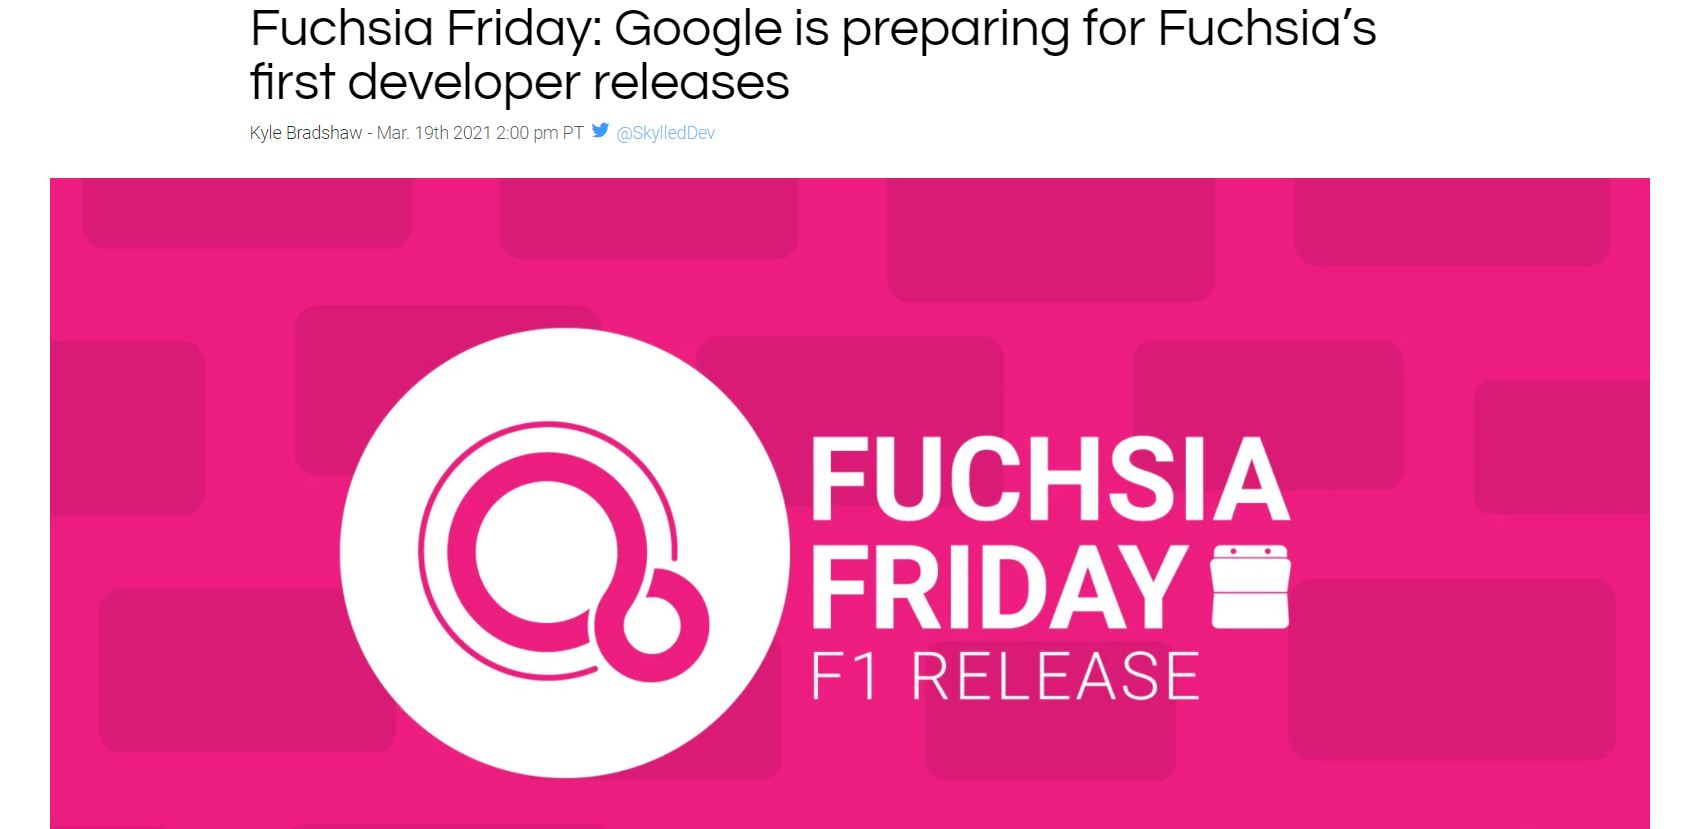 谷歌准备发布 Fuchsia 首个开发者预览版